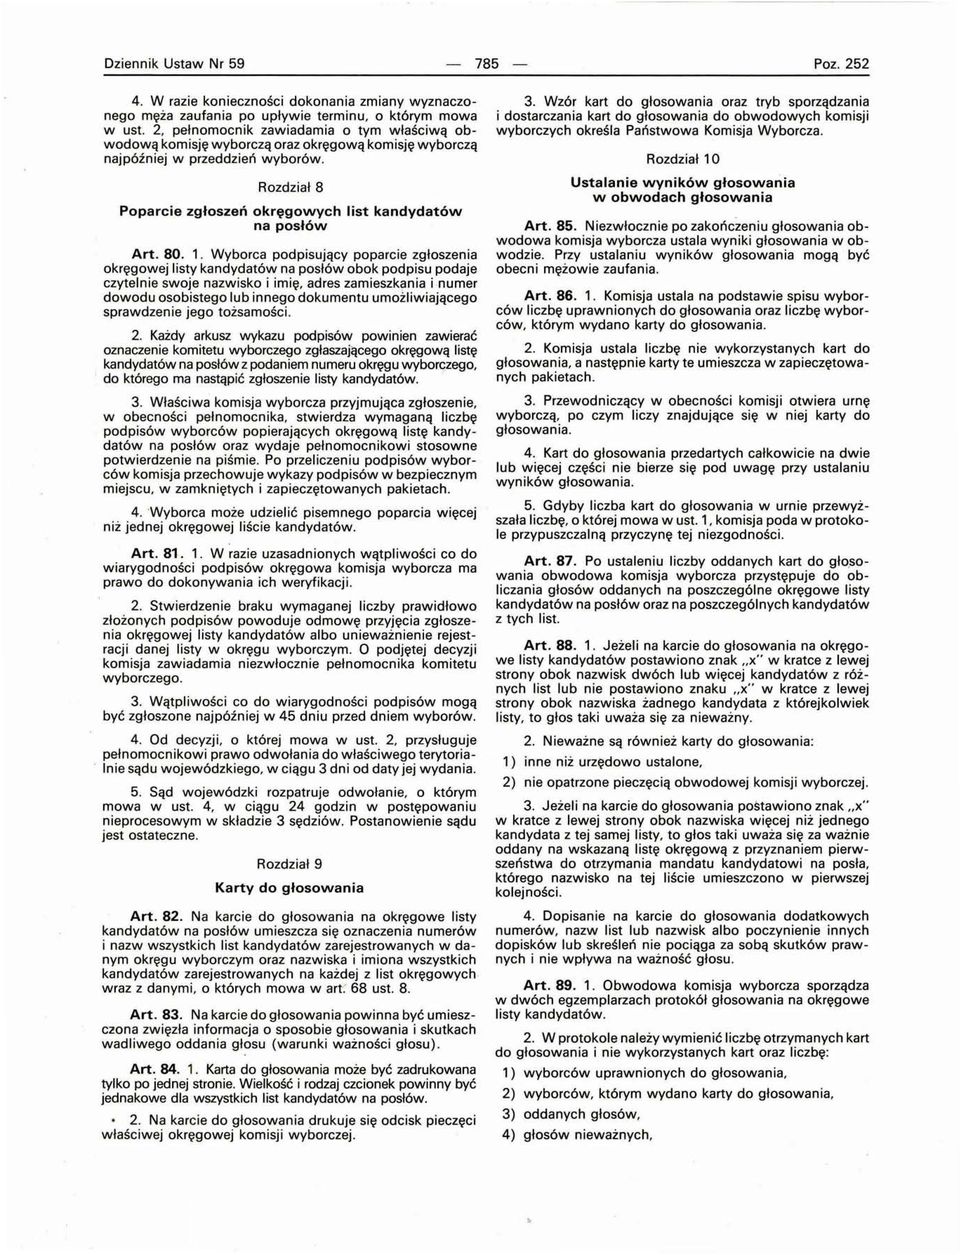 Rozdział 8 Poparcie zgłoszeń okręgowych list kandydatów na posłów Art. 80. 1.